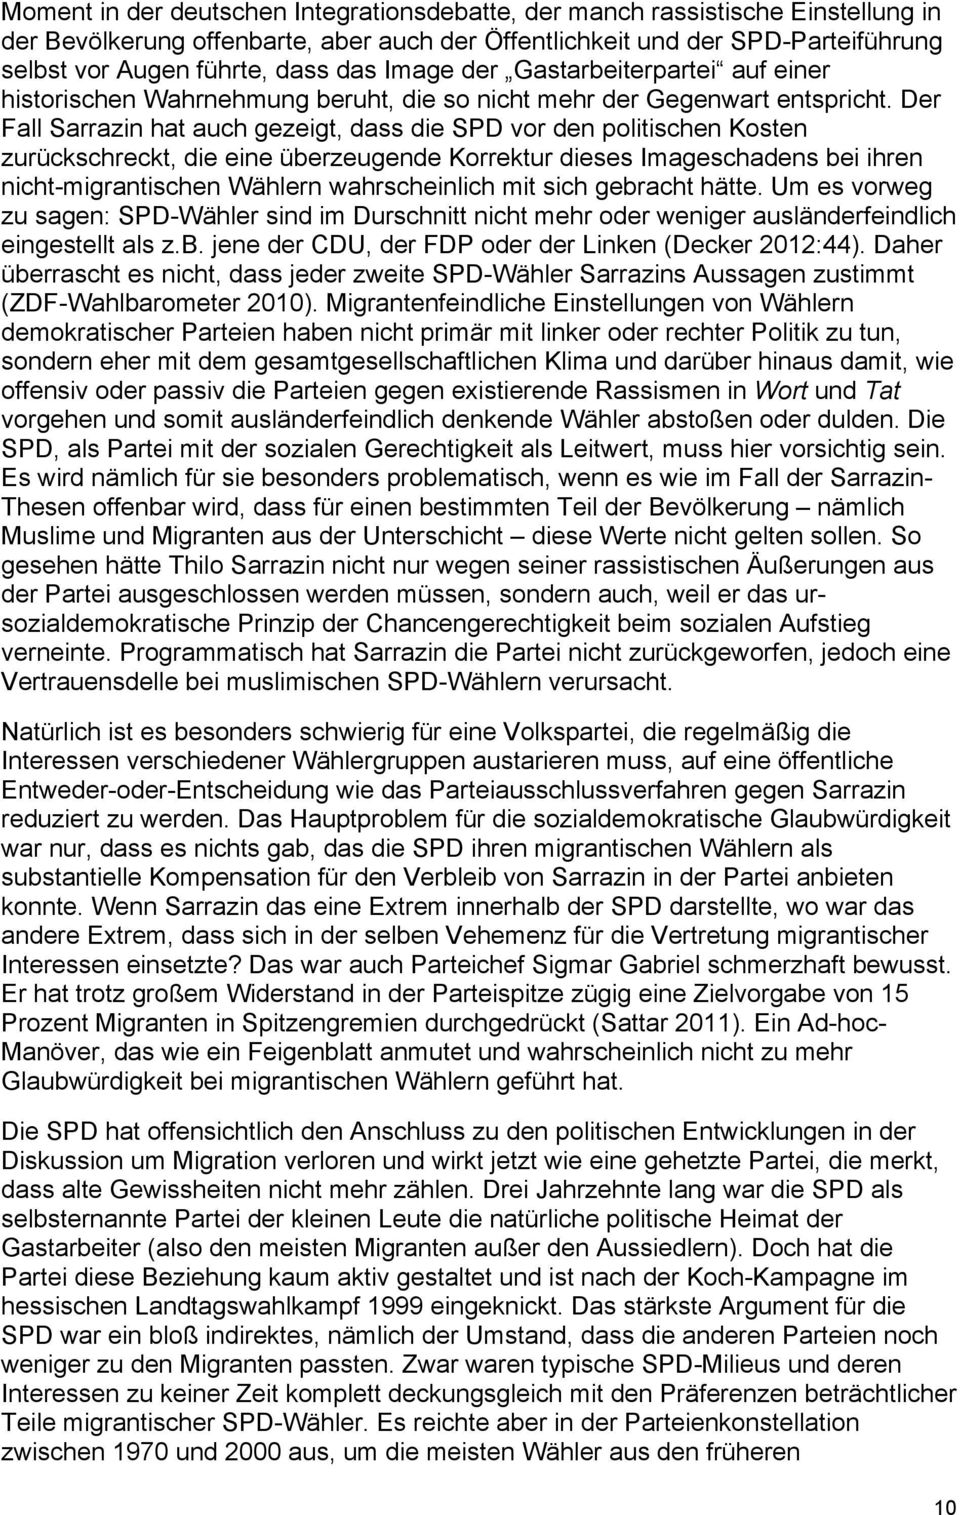 Der Fall Sarrazin hat auch gezeigt, dass die SPD vor den politischen Kosten zurückschreckt, die eine überzeugende Korrektur dieses Imageschadens bei ihren nicht-migrantischen Wählern wahrscheinlich